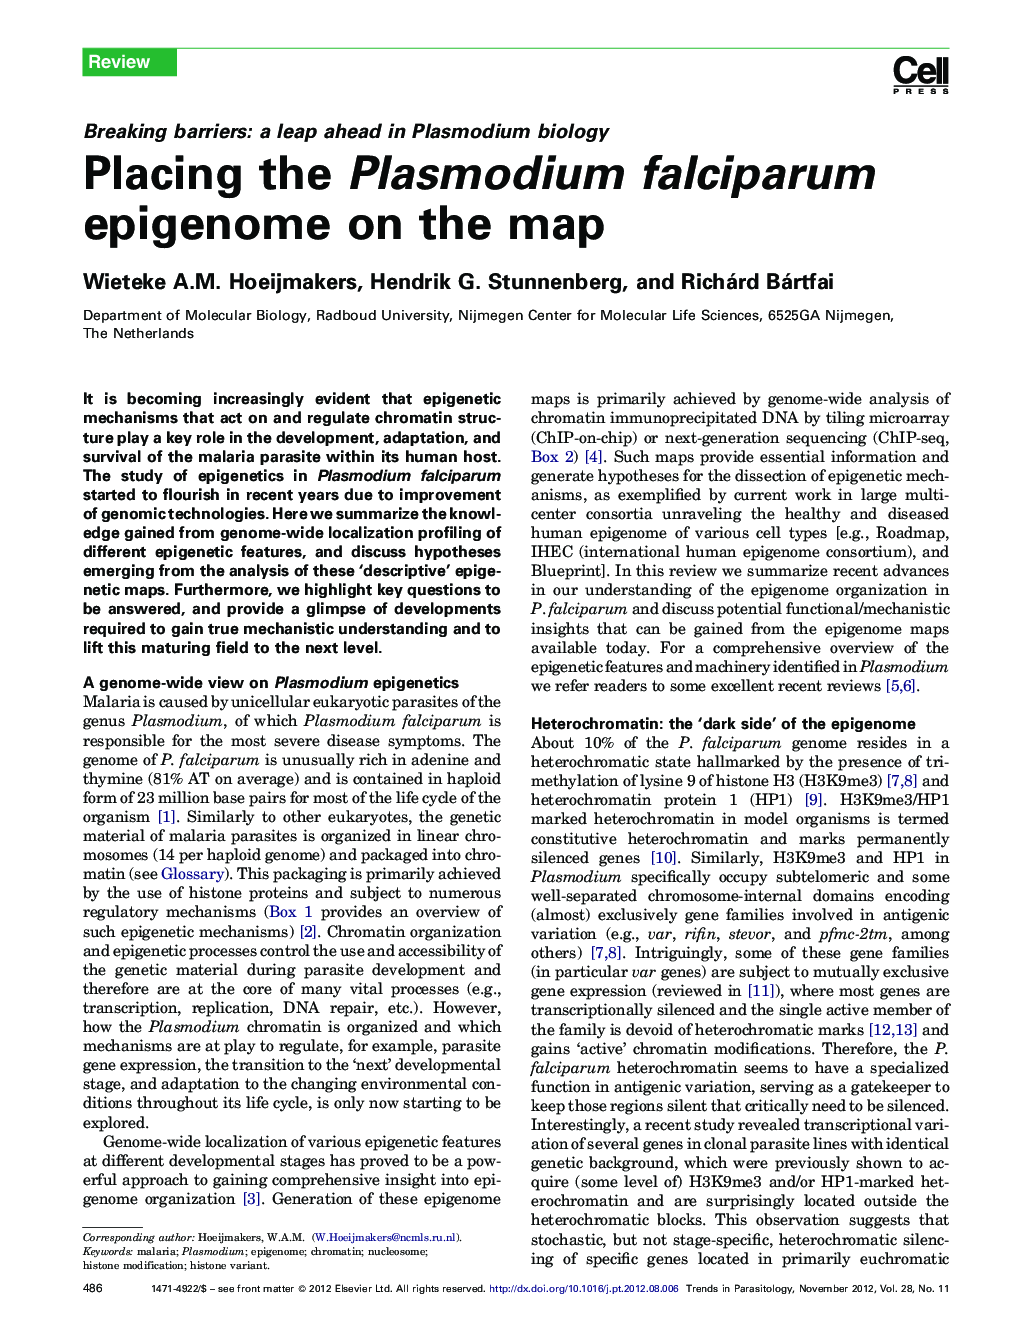 Placing the Plasmodium falciparum epigenome on the map